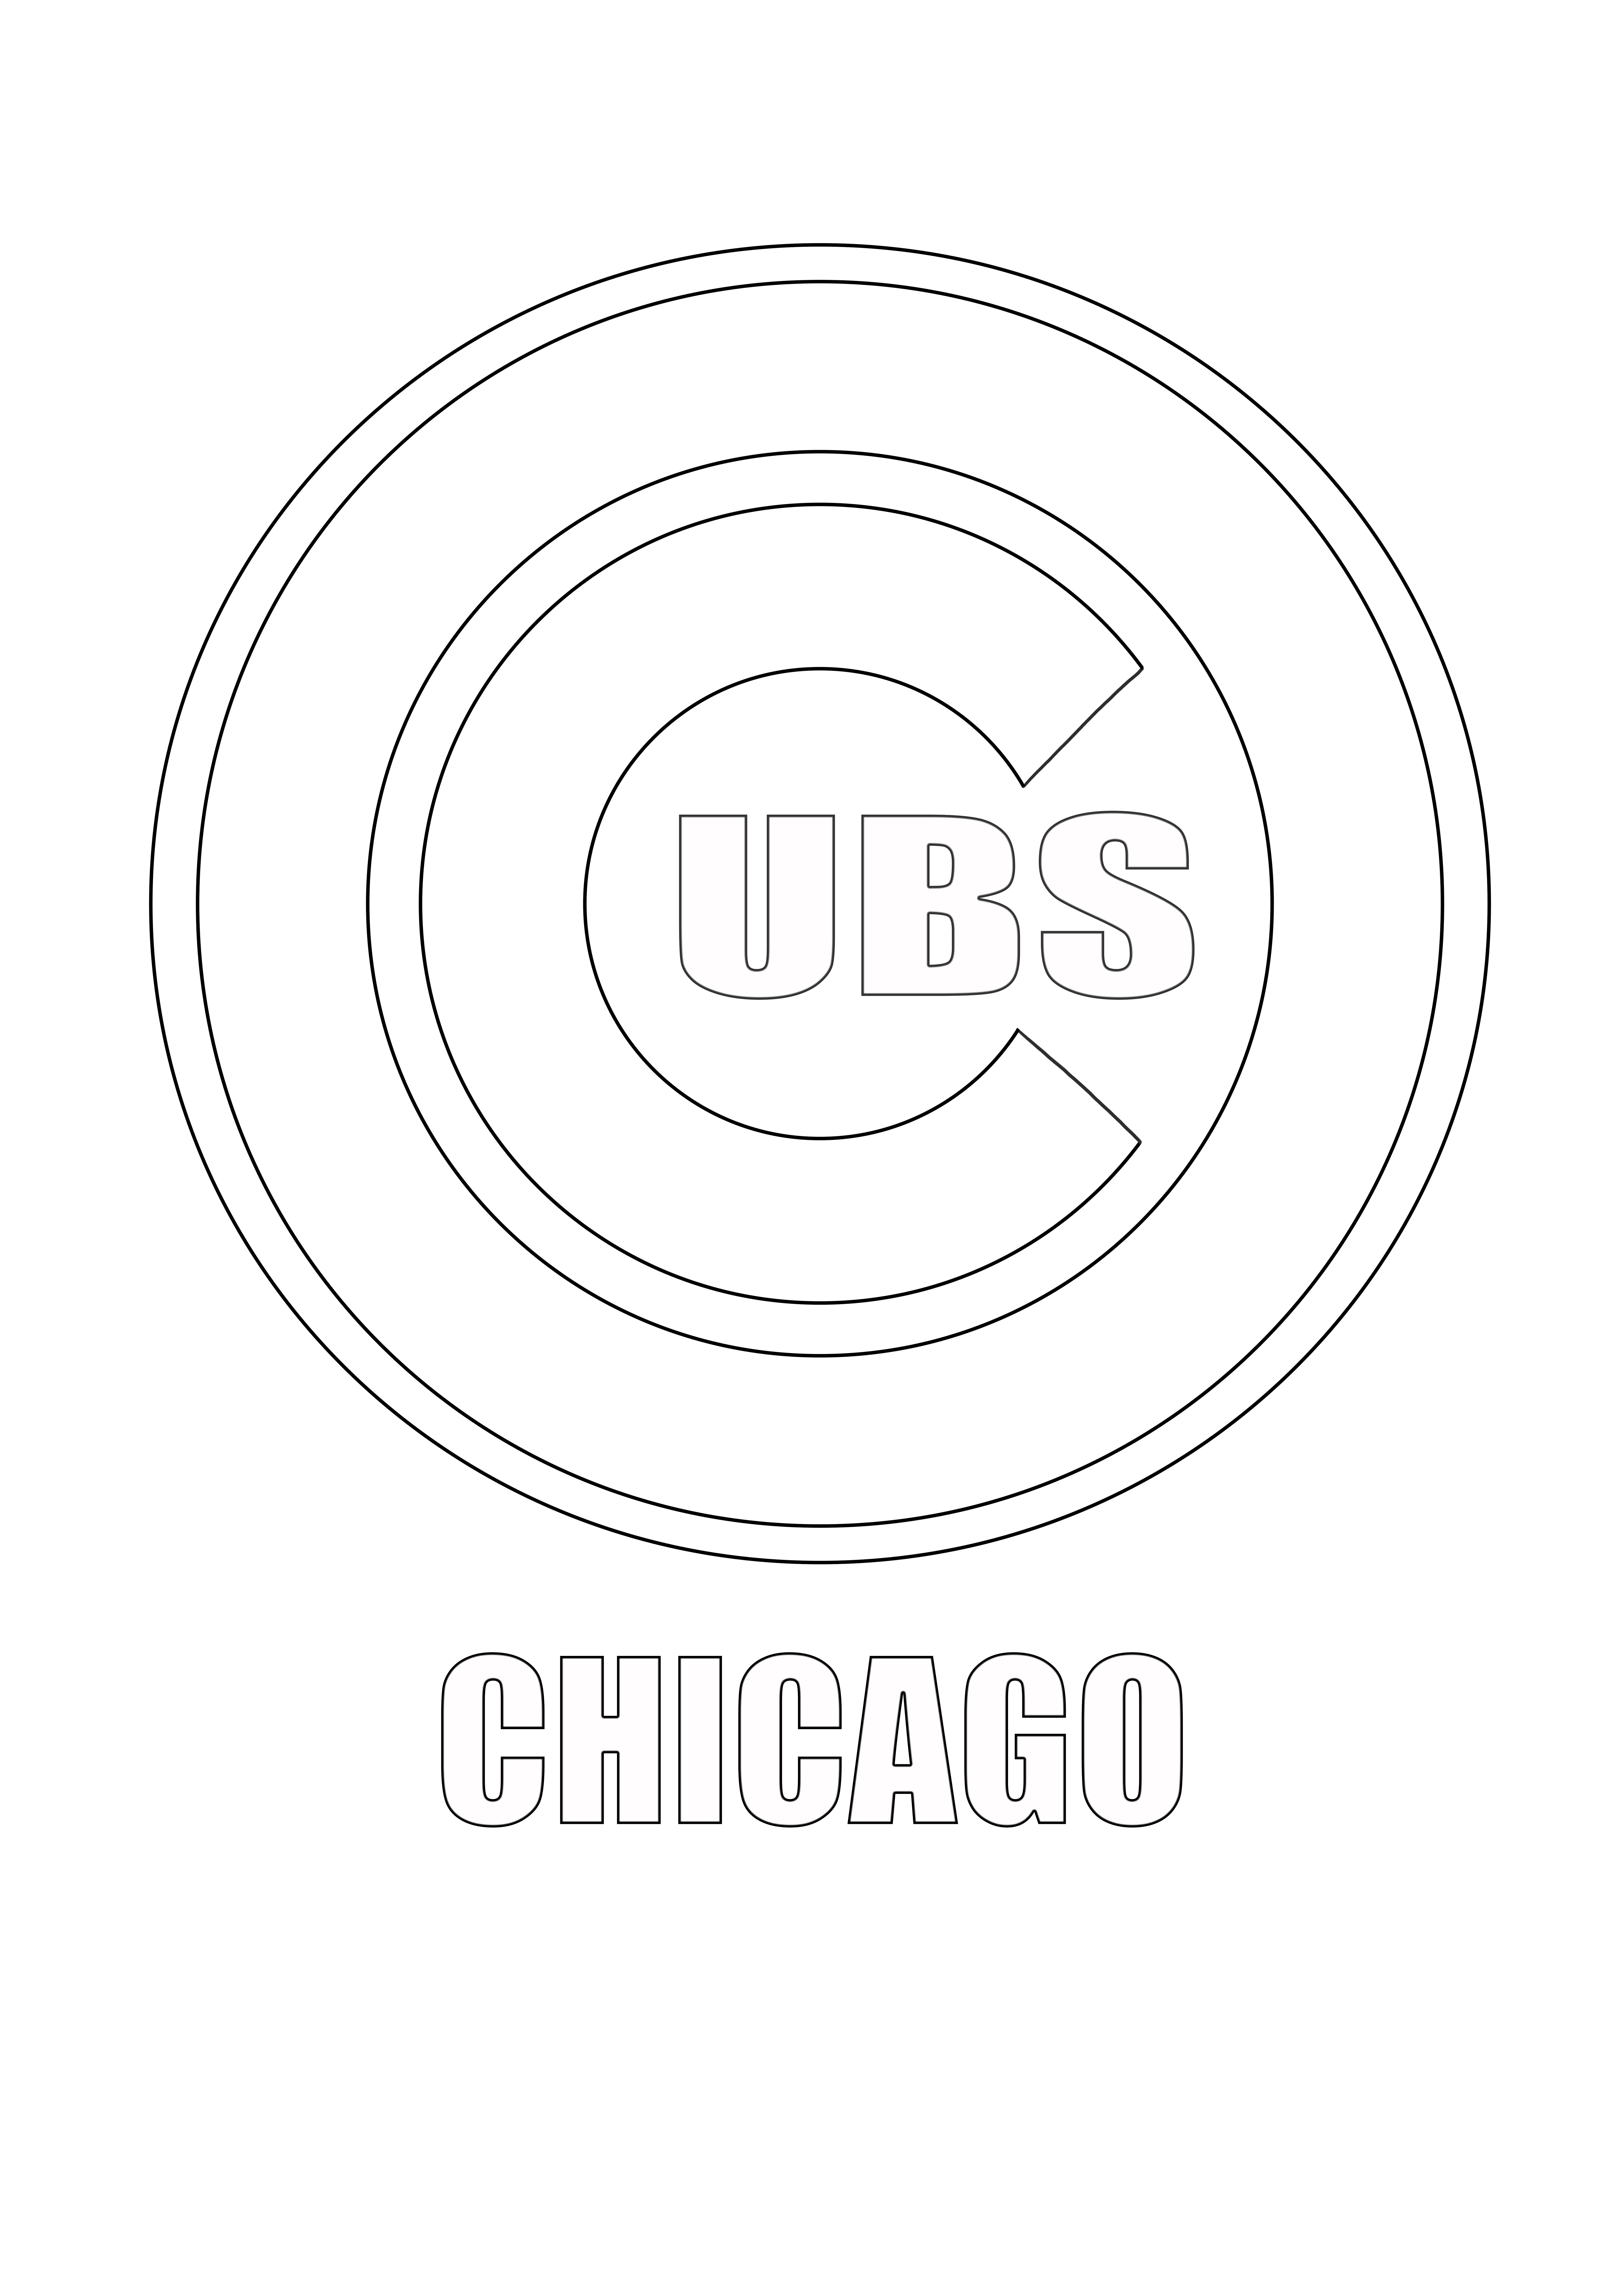 Logotipo de MLB-Chicago Cubs gratis para guardar para más tarde o descargar la hoja